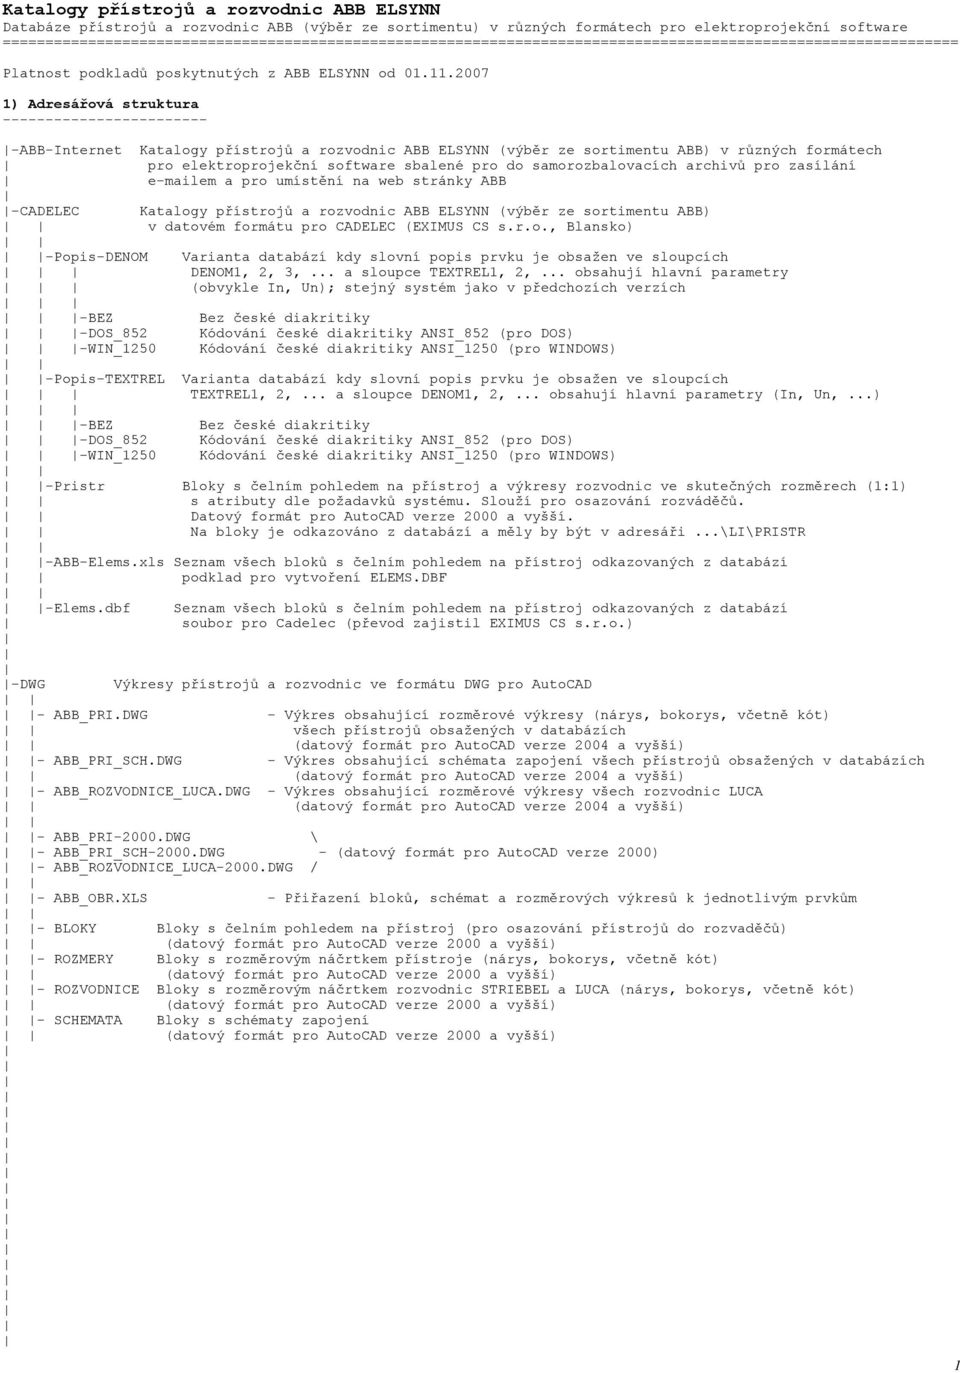 ABB_OBR.XLS - Přiřazení bloků, schémat a rozměrových výkresů k jednotlivým  prvkům - PDF Stažení zdarma